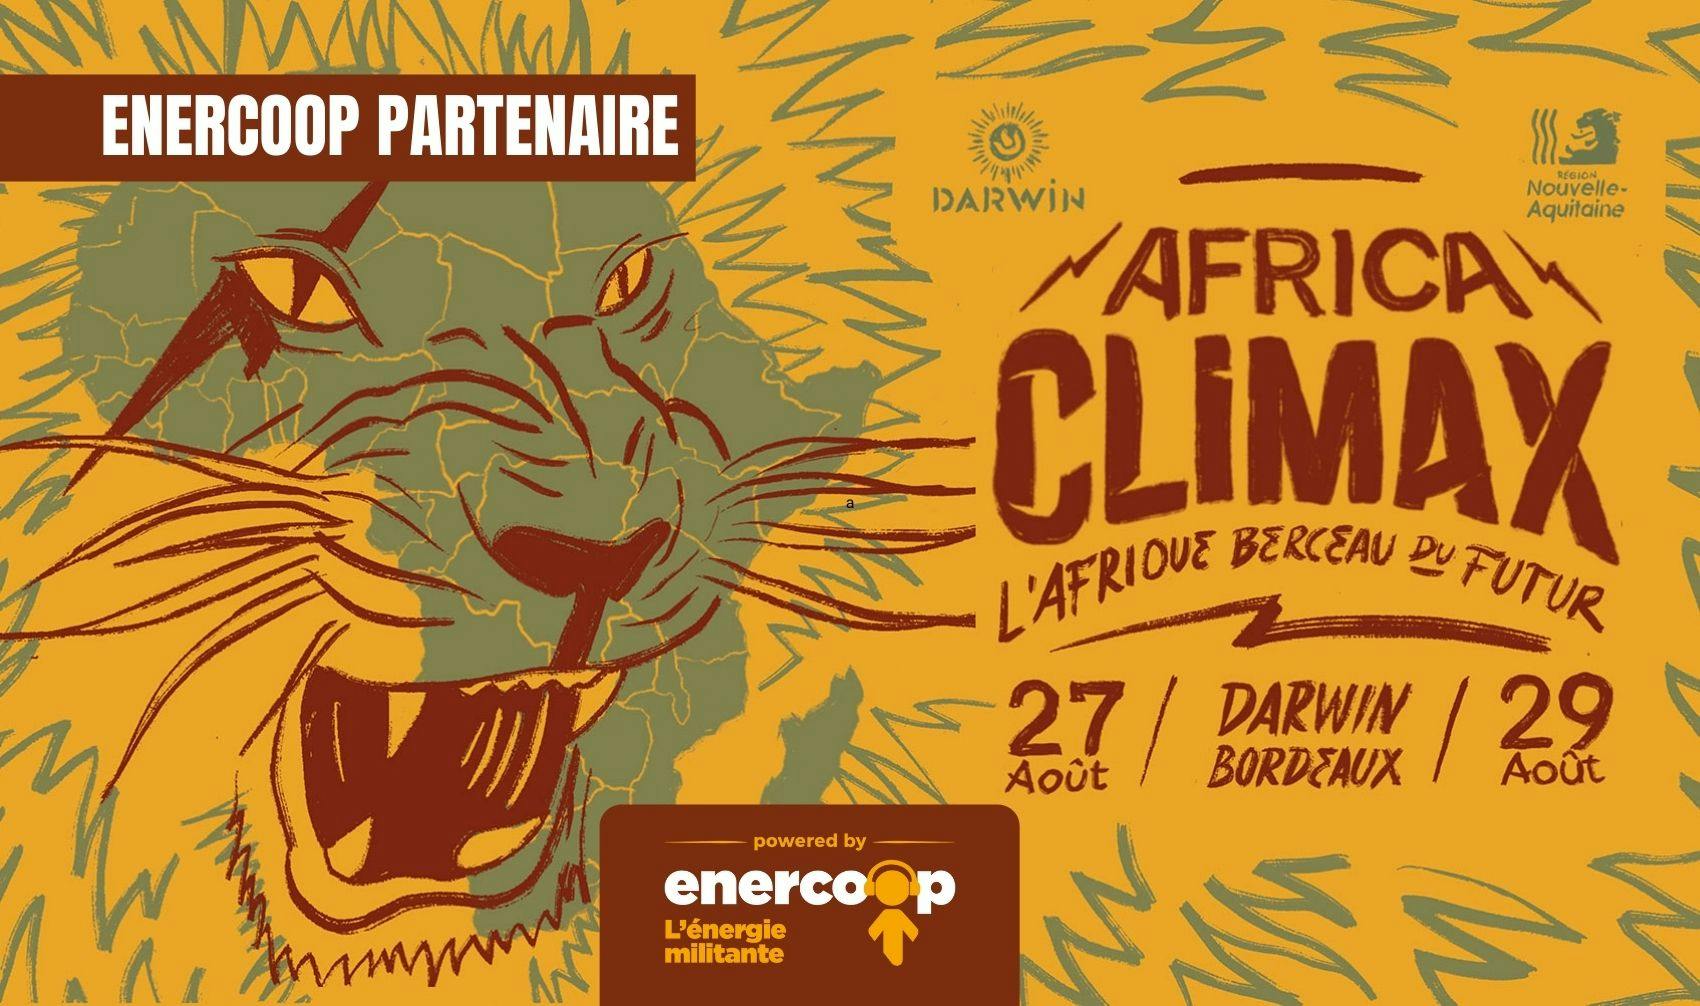 Enercoop partenaire du festival AFRICA CLIMAX - Enercoop Nouvelle-Aquitaine